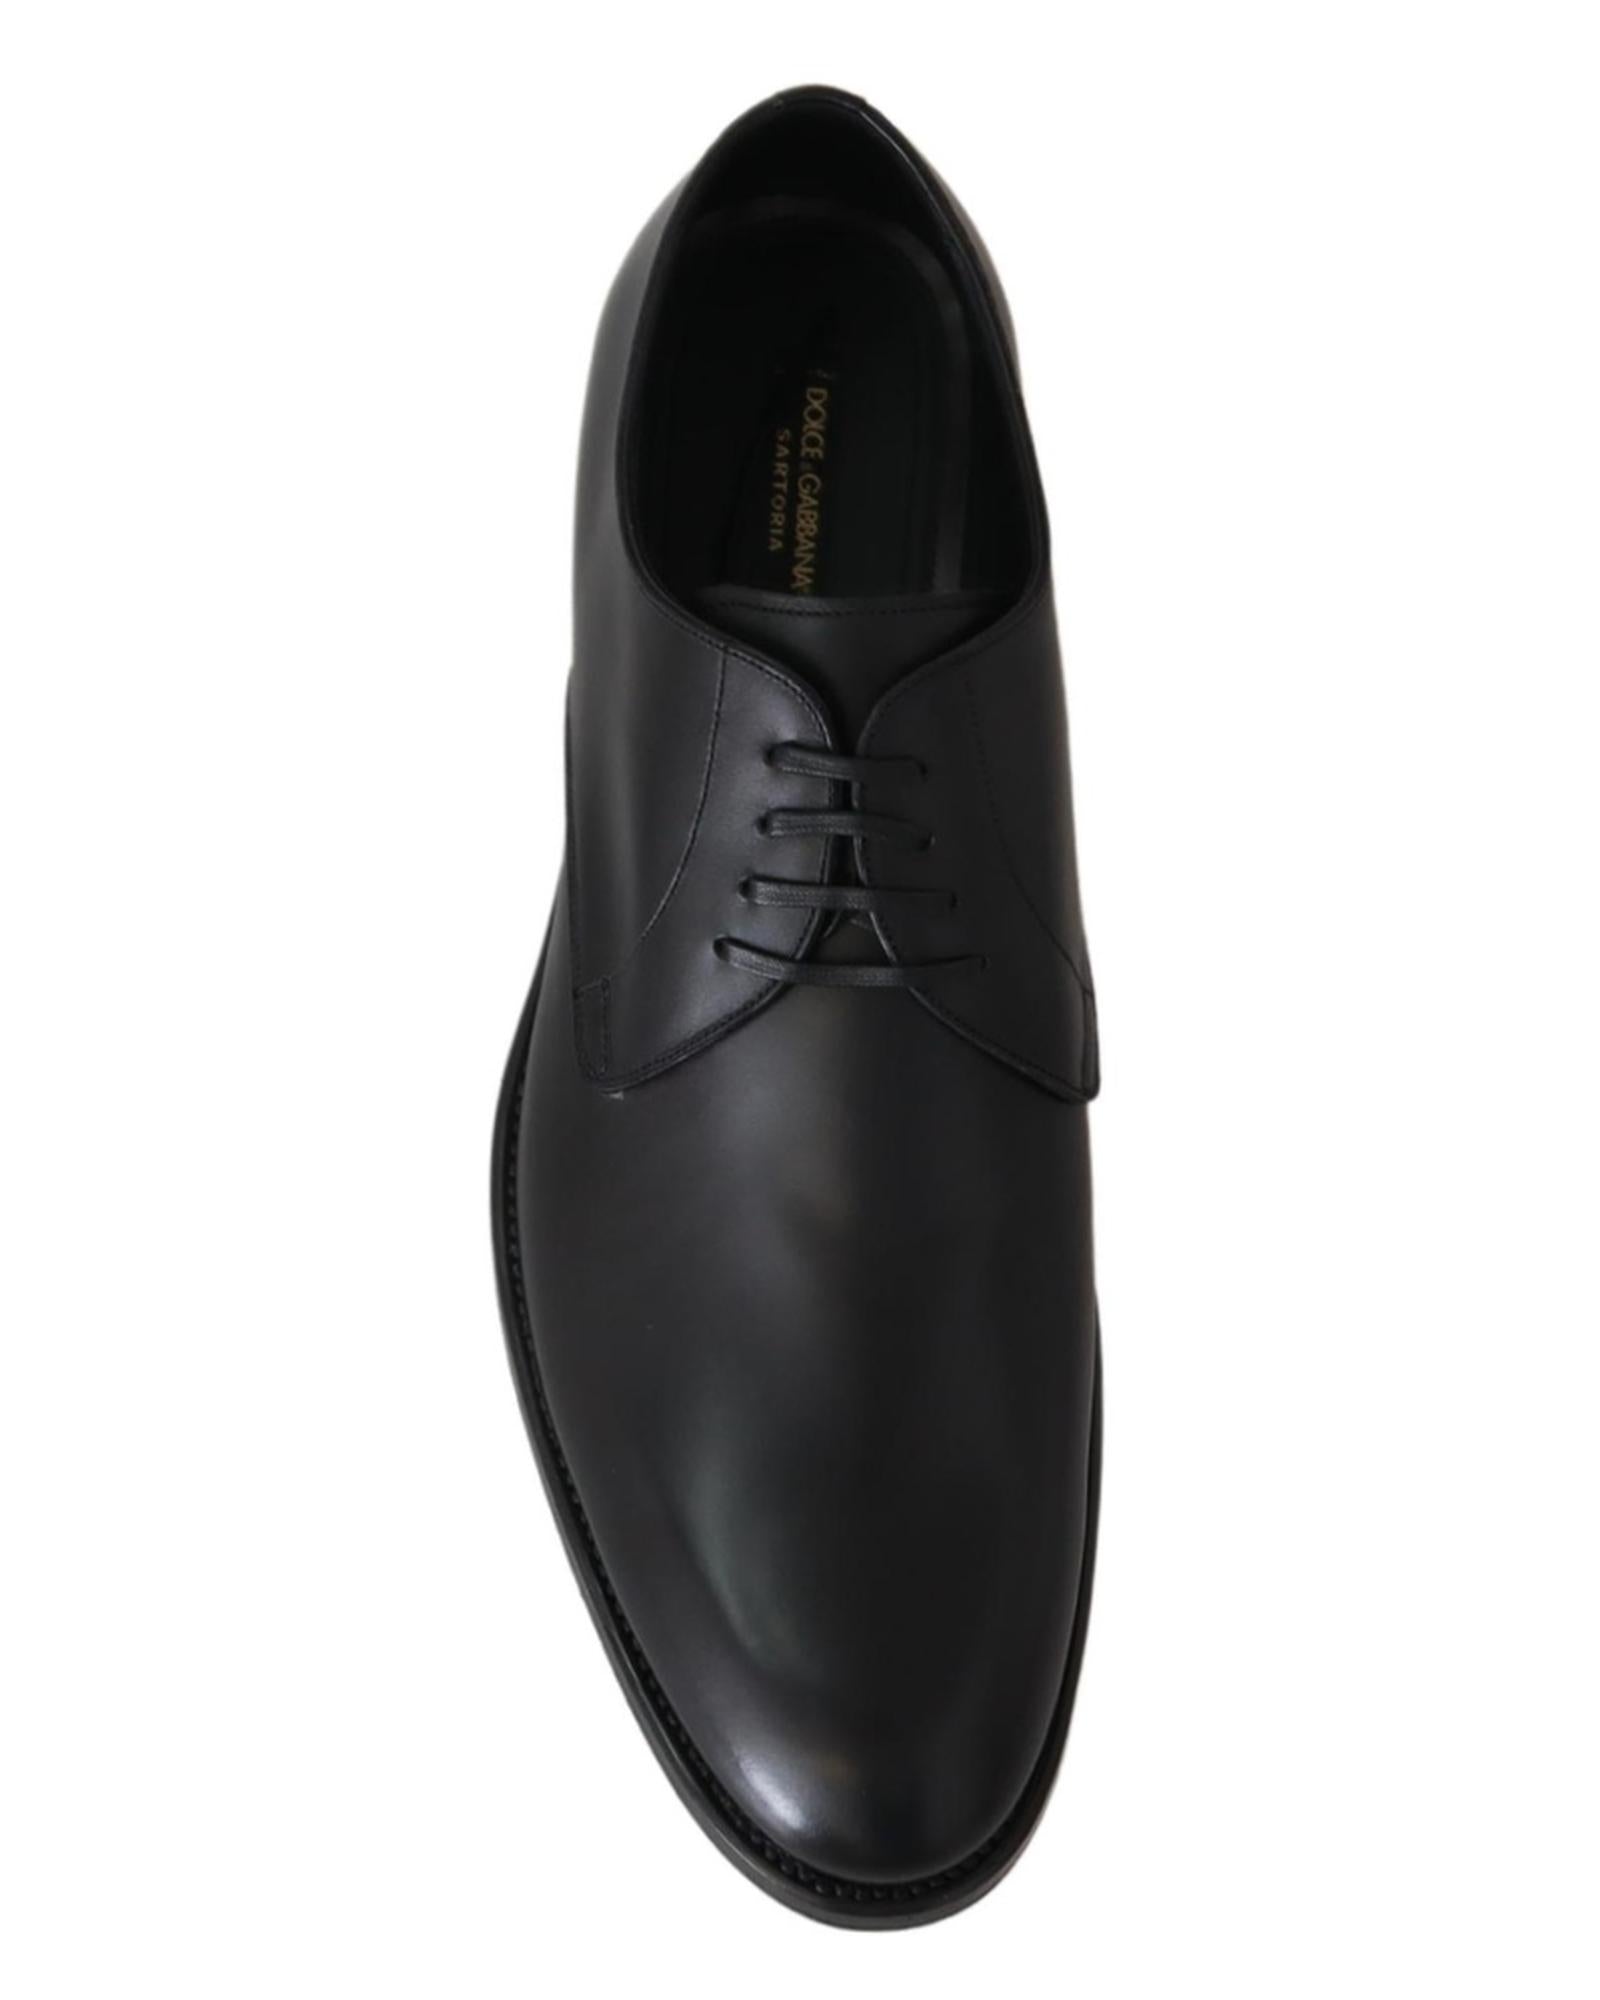 Handcrafted Black Leather Derby Dress Formal Shoes 39 EU Men